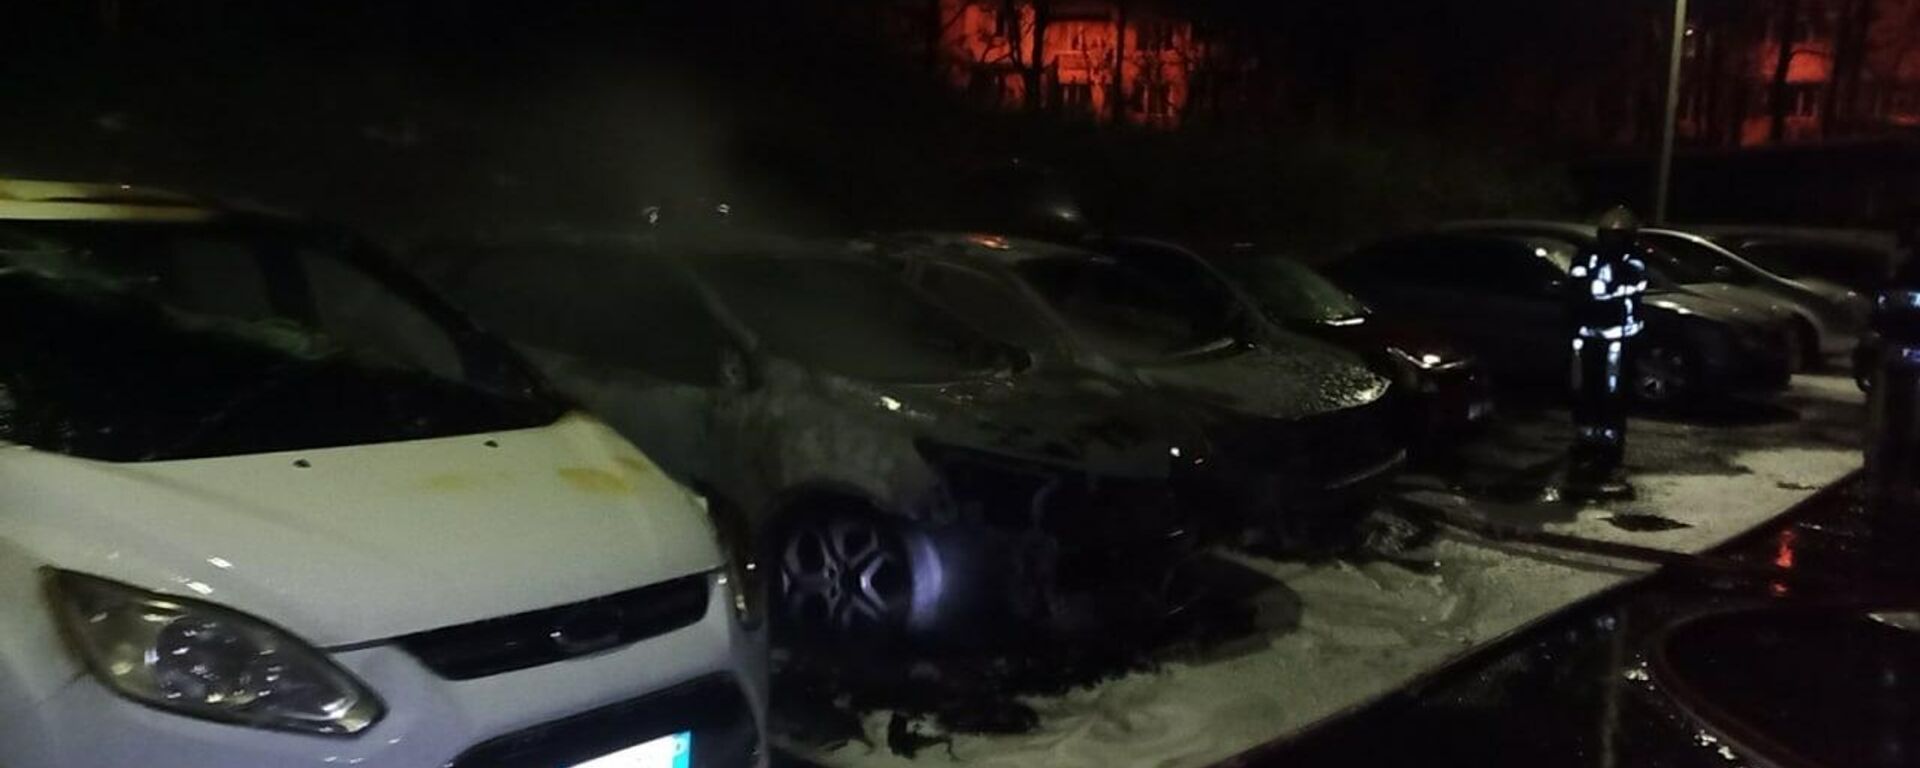 В Кишиневе ночью сгорели четыре машины - Sputnik Молдова, 1920, 12.12.2021